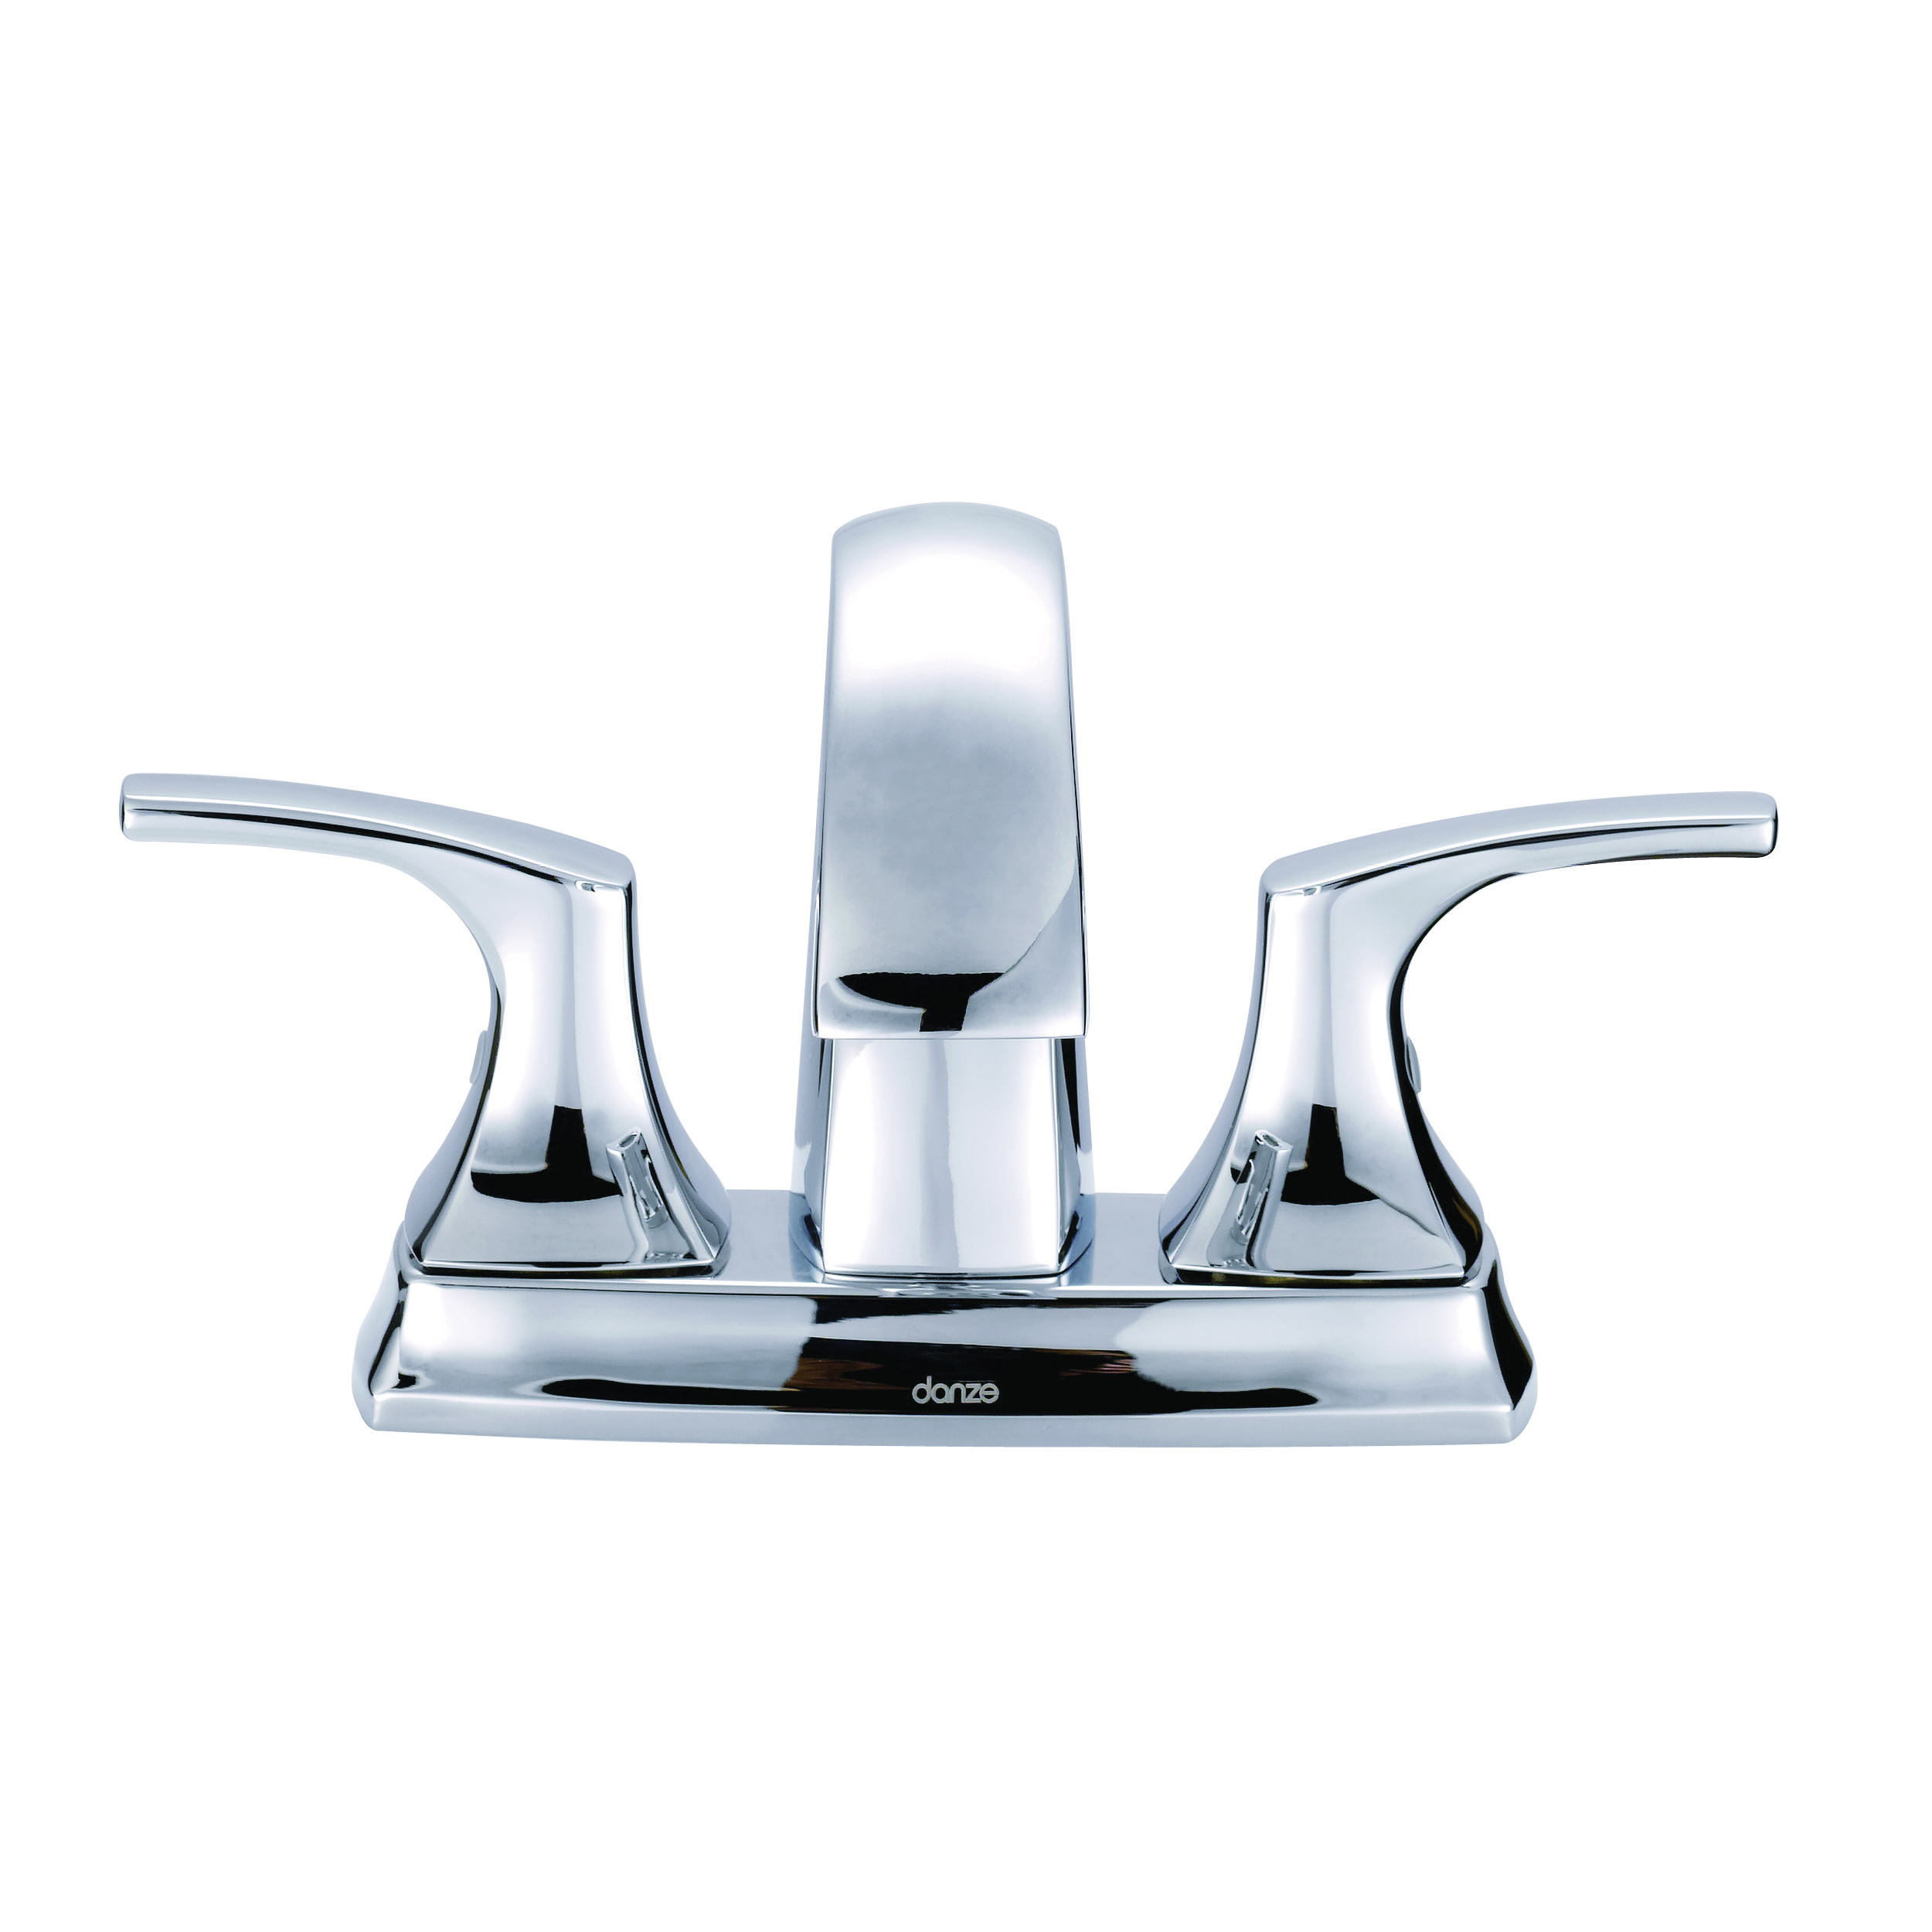 Danze® D307018 Centerset Lavatory Faucet, Vaughn™, Polished Chrome, 2 Handles, Metal Pop-Up Drain, 1.2 gpm